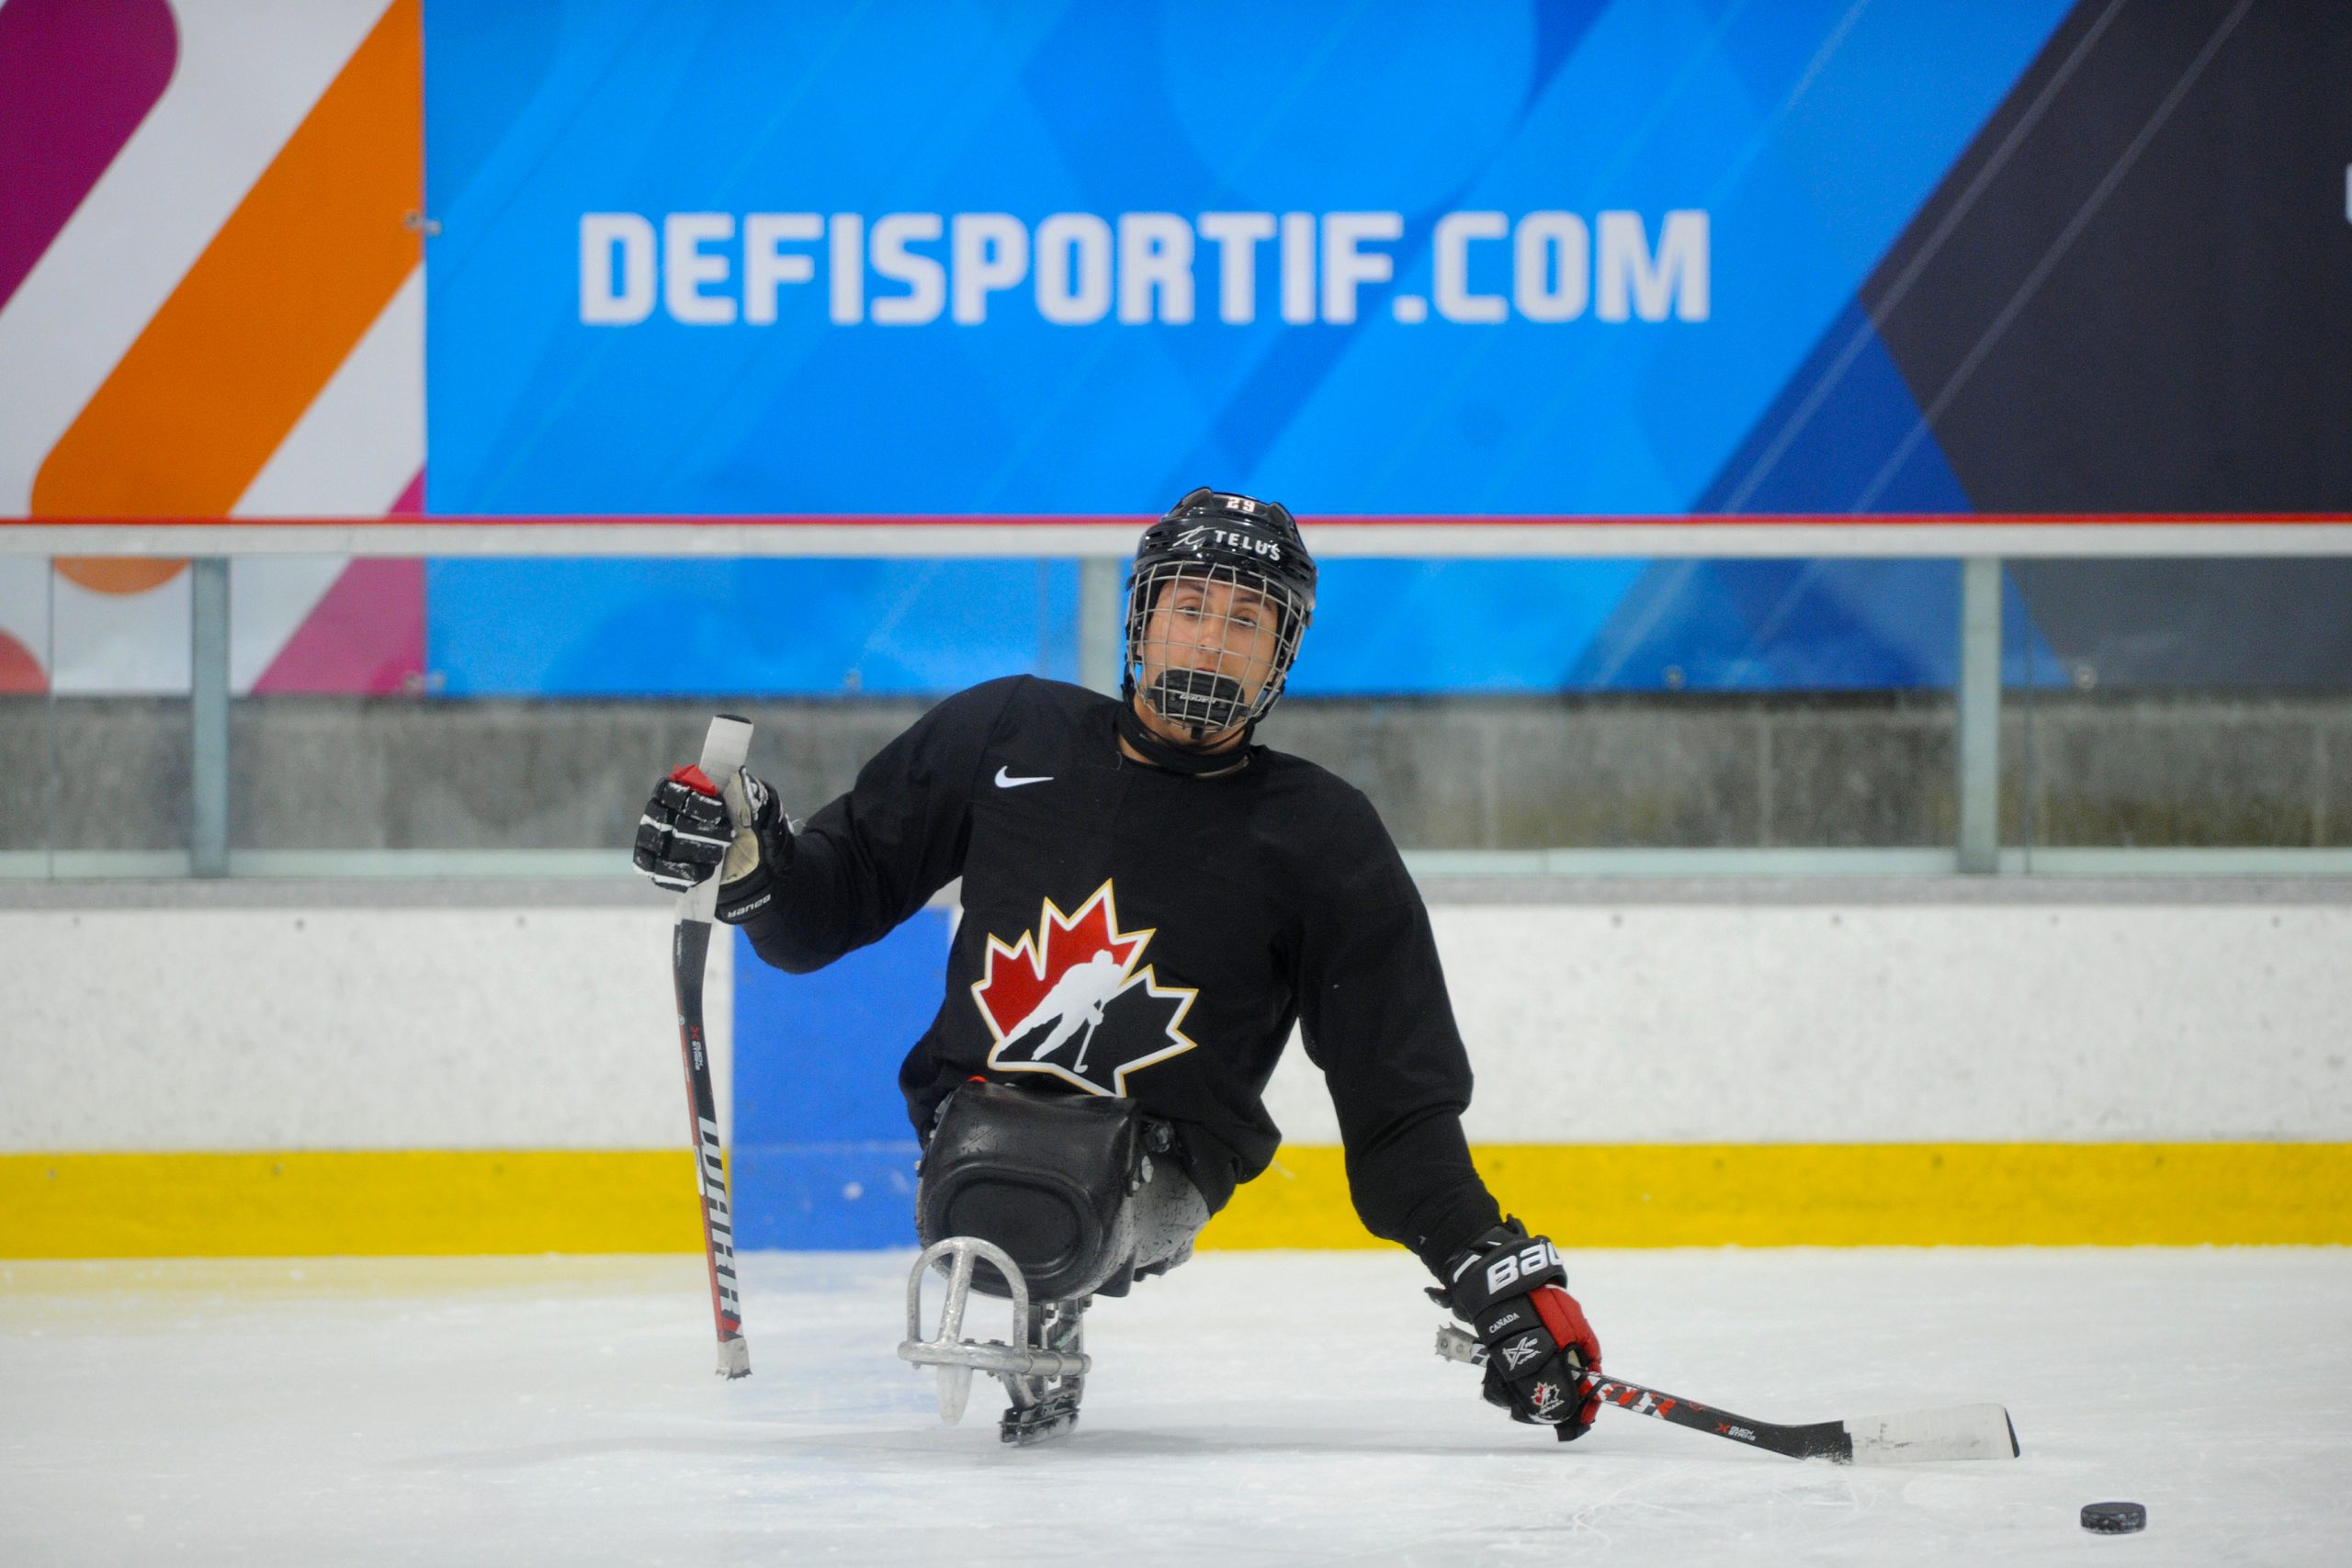 Description de l'image : Au centre, un athlète canadien de parahockey regarde vers la caméra. Son bâton gauche est placé près de la rondelle, qui est sur la glace devant lui.